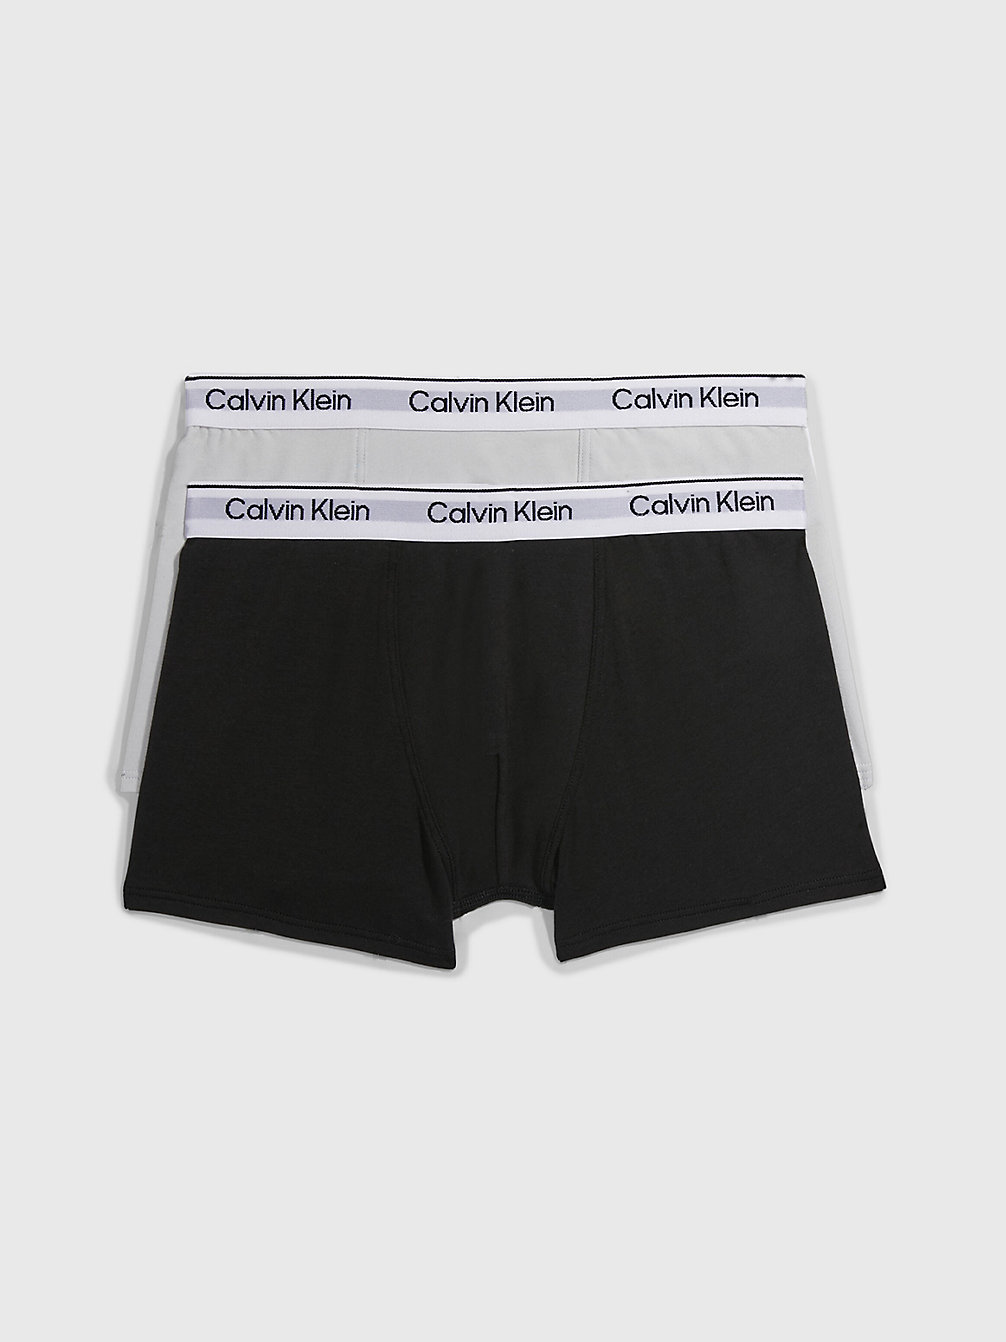 STONEGREY/PVHBLACK > 2er-Pack Boxershorts Für Jungen - Modern Cotton > undefined Jungen - Calvin Klein